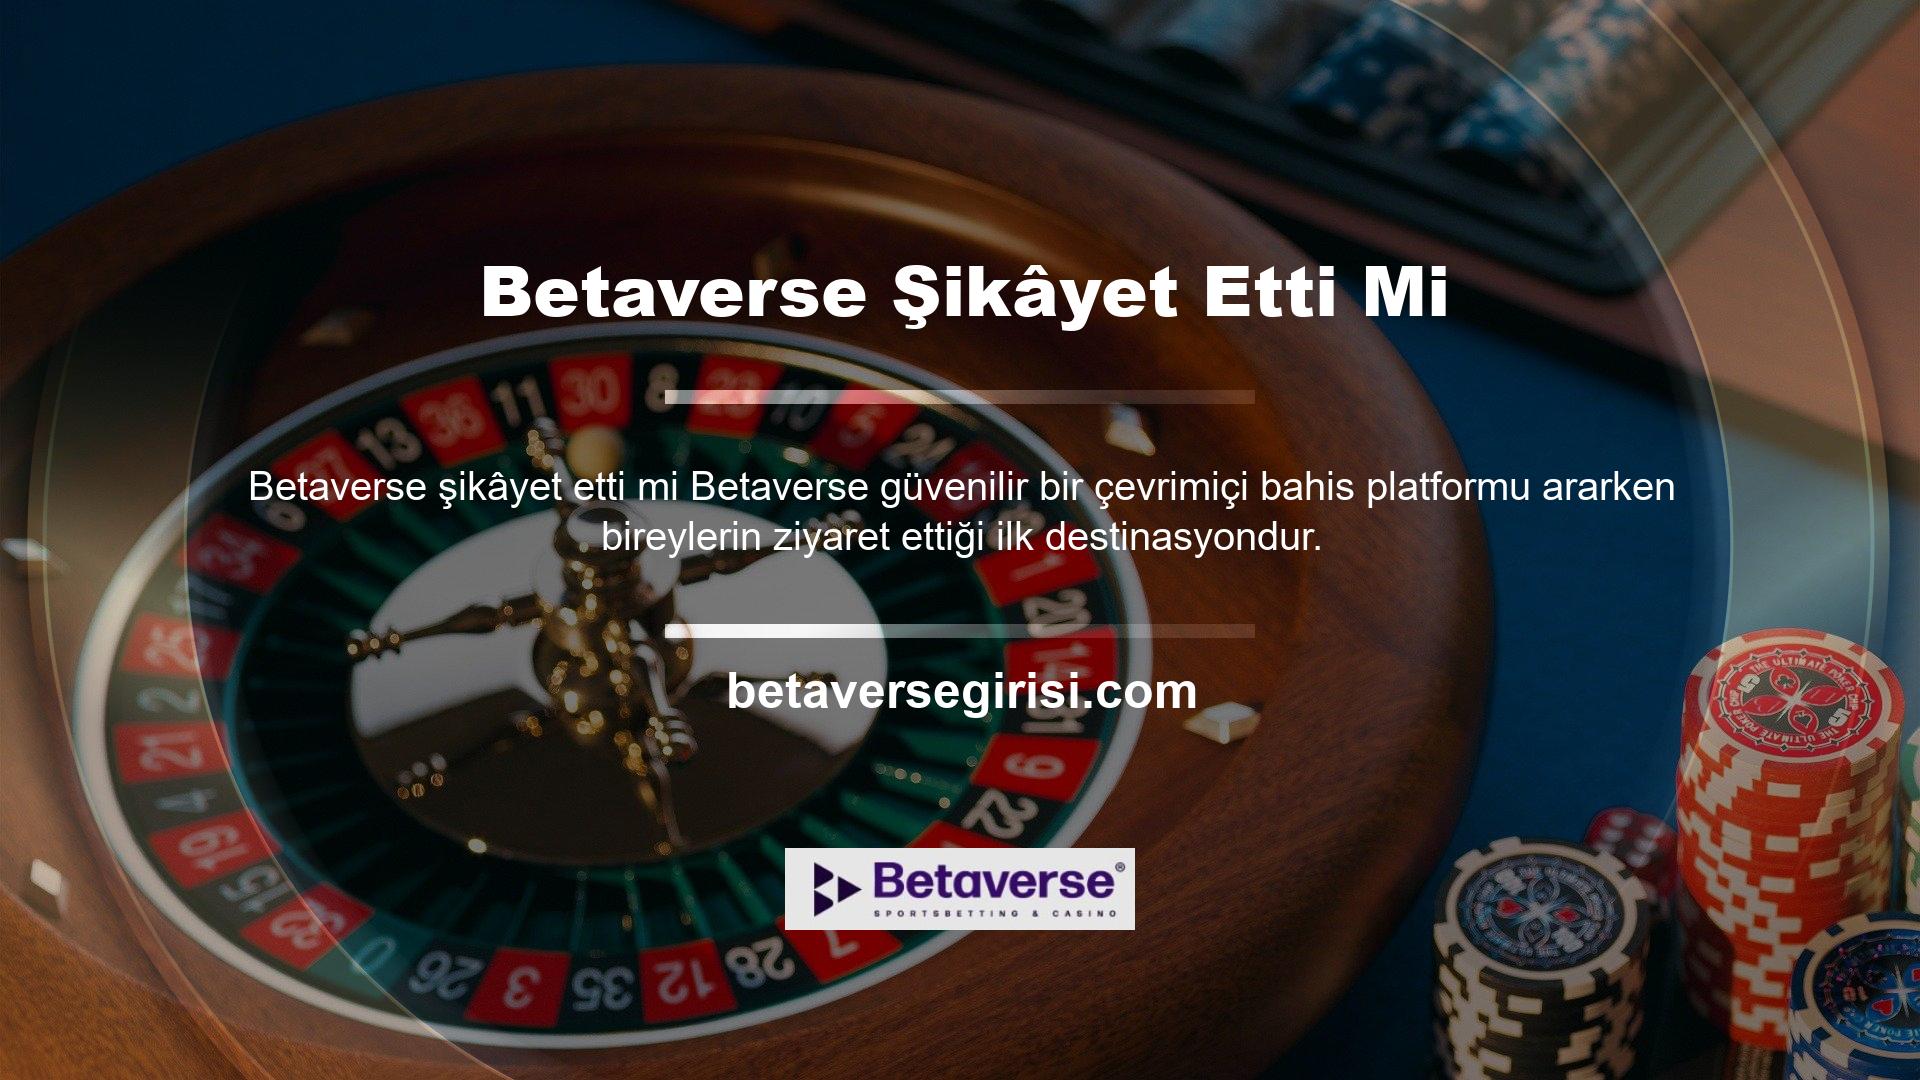 Betaverse internette casino oynamaktan ve oyun oynamaktan hoşlanan kişiler, her durumda aldıkları hizmetten memnun olduklarını söylüyor